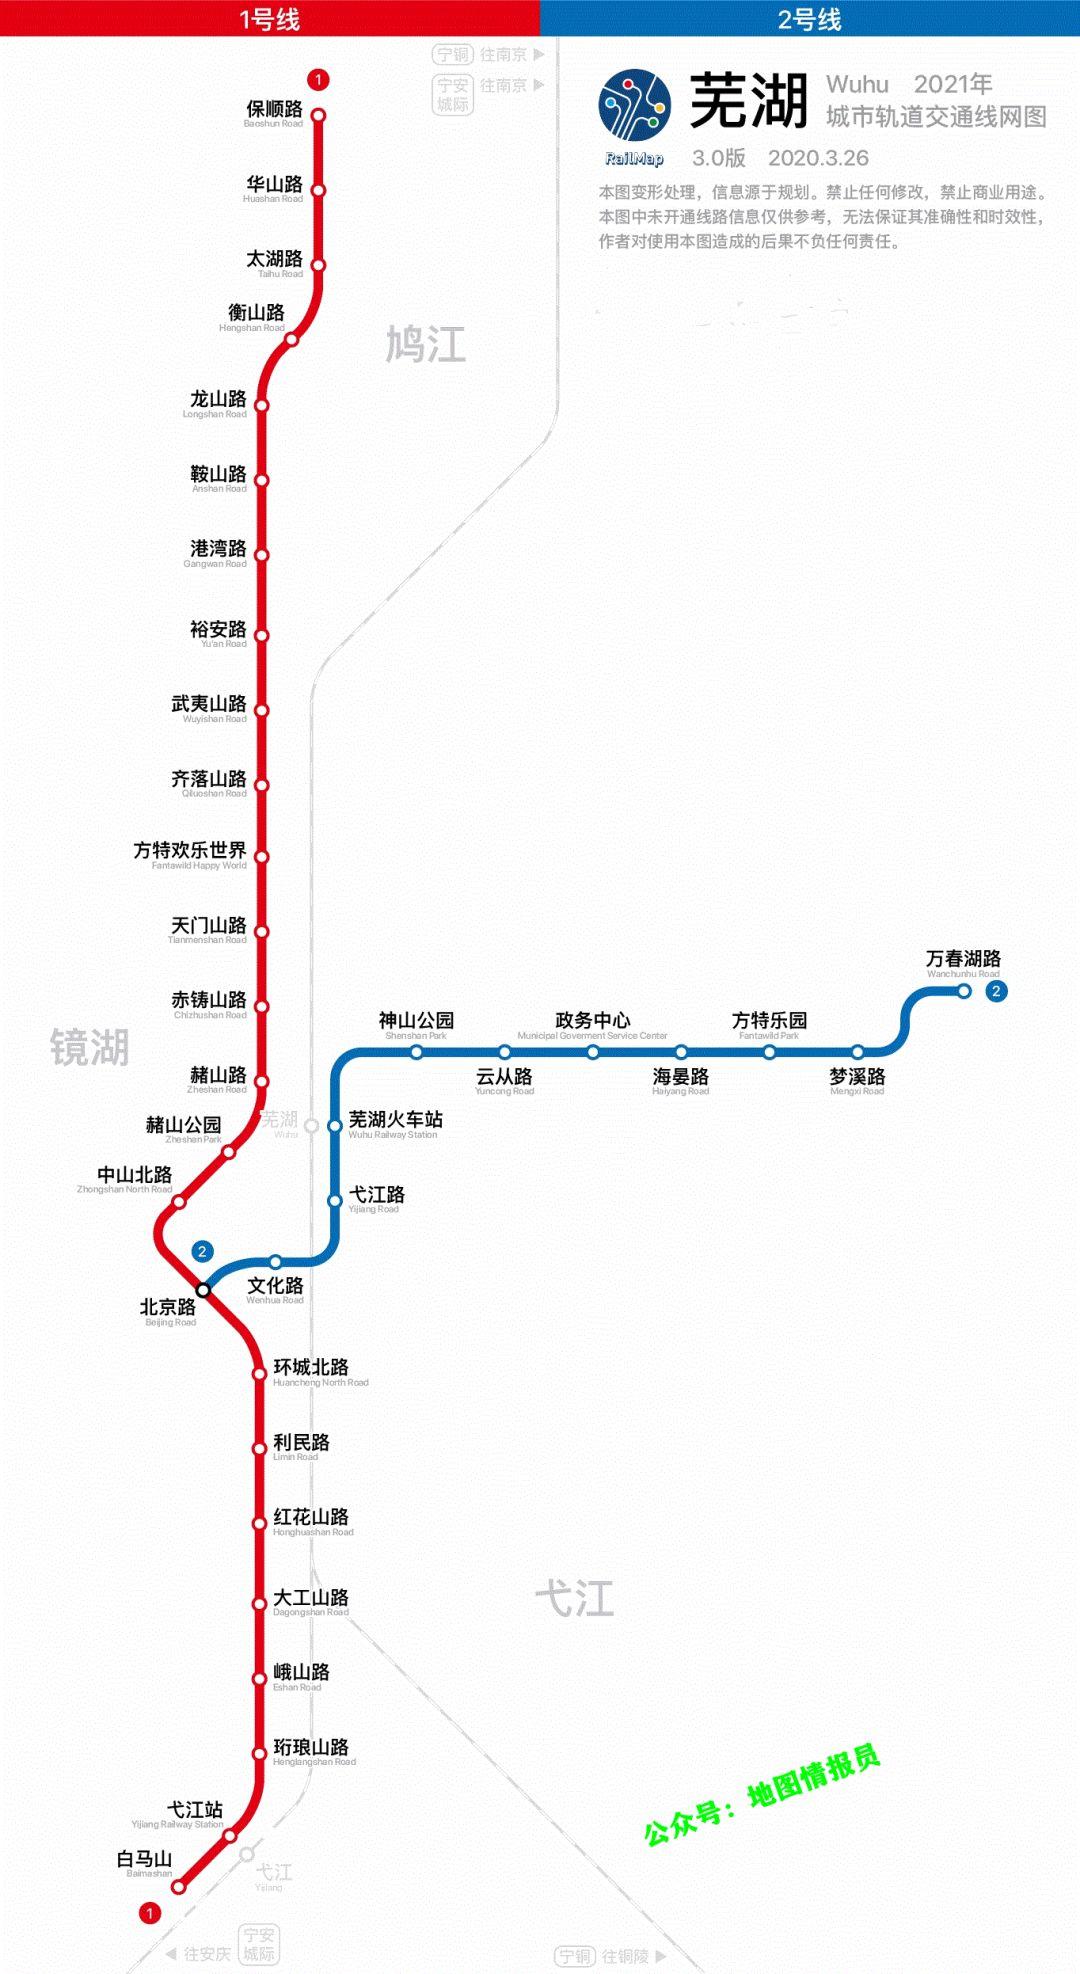 规划台州市台州轨道交通近期将建设有2条线路,分别为台州轨道交通s1线